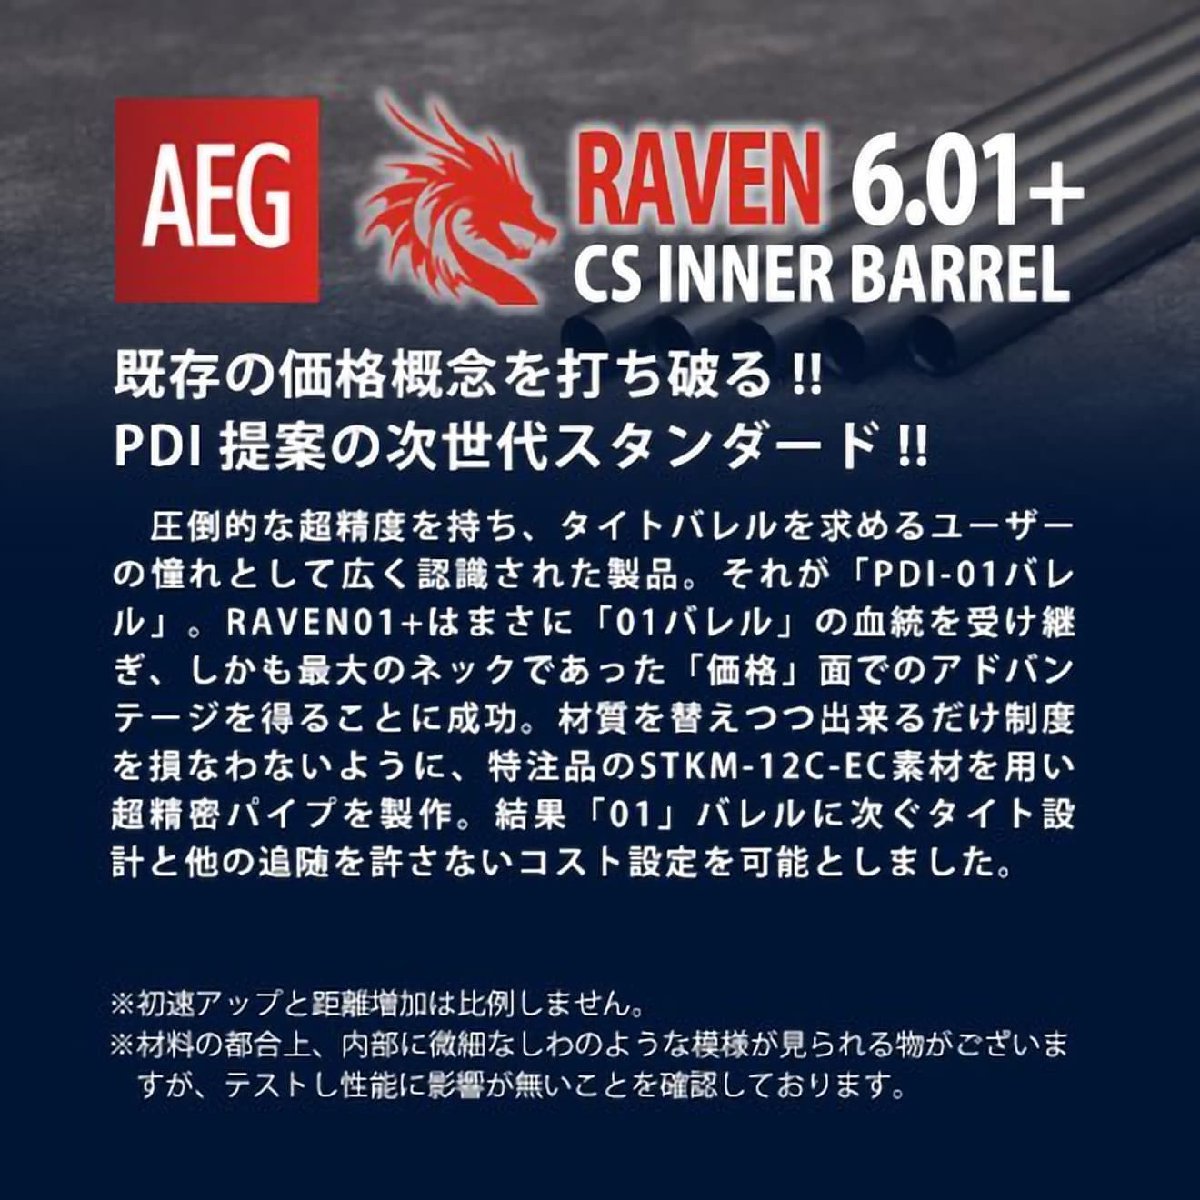 PD-AE-003　PDI RAVENシリーズ 01+ AEG 精密インナーバレル(6.01±0.007) 247mm マルイ G36C/P90/SIG552_画像3